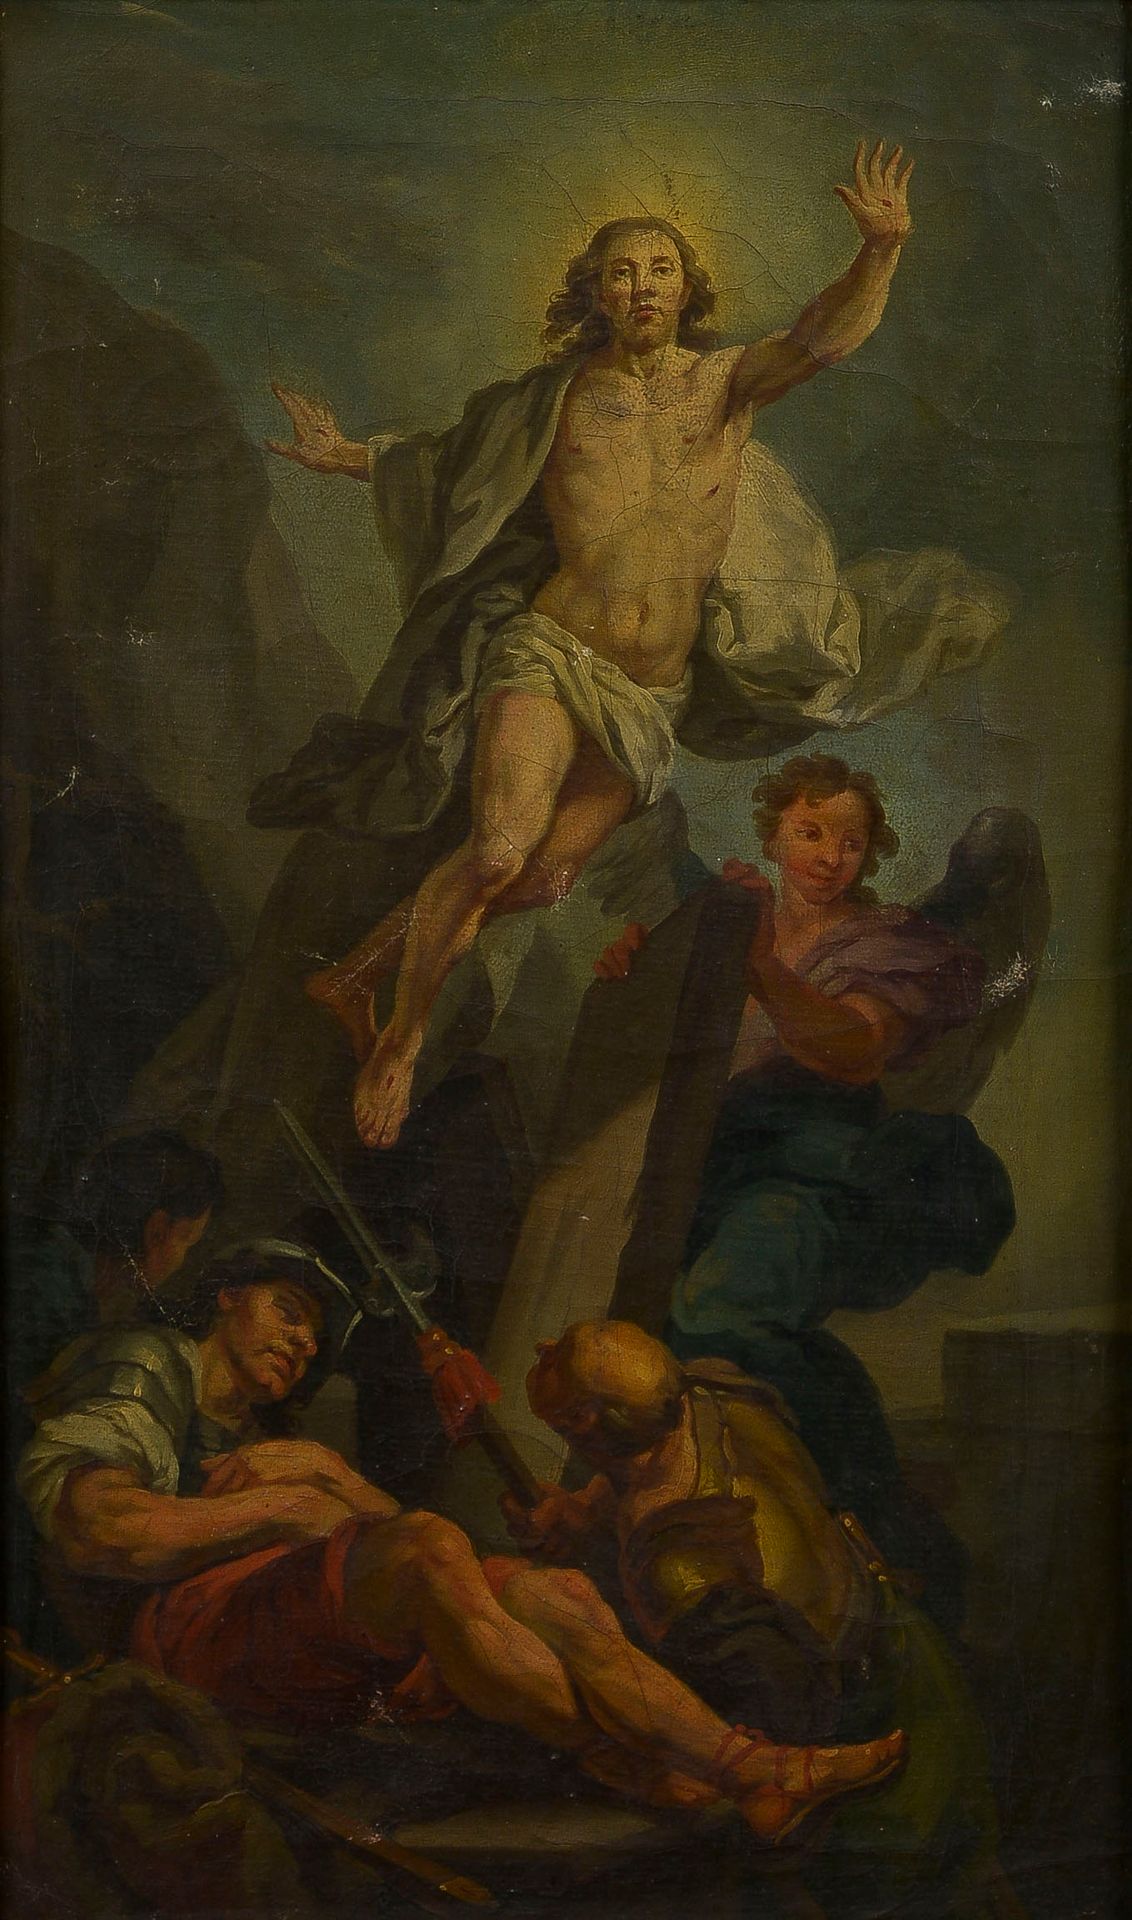 Null Antoine RENOU (1731-1806), según Carle van Loo

La resurrección de Cristo

&hellip;